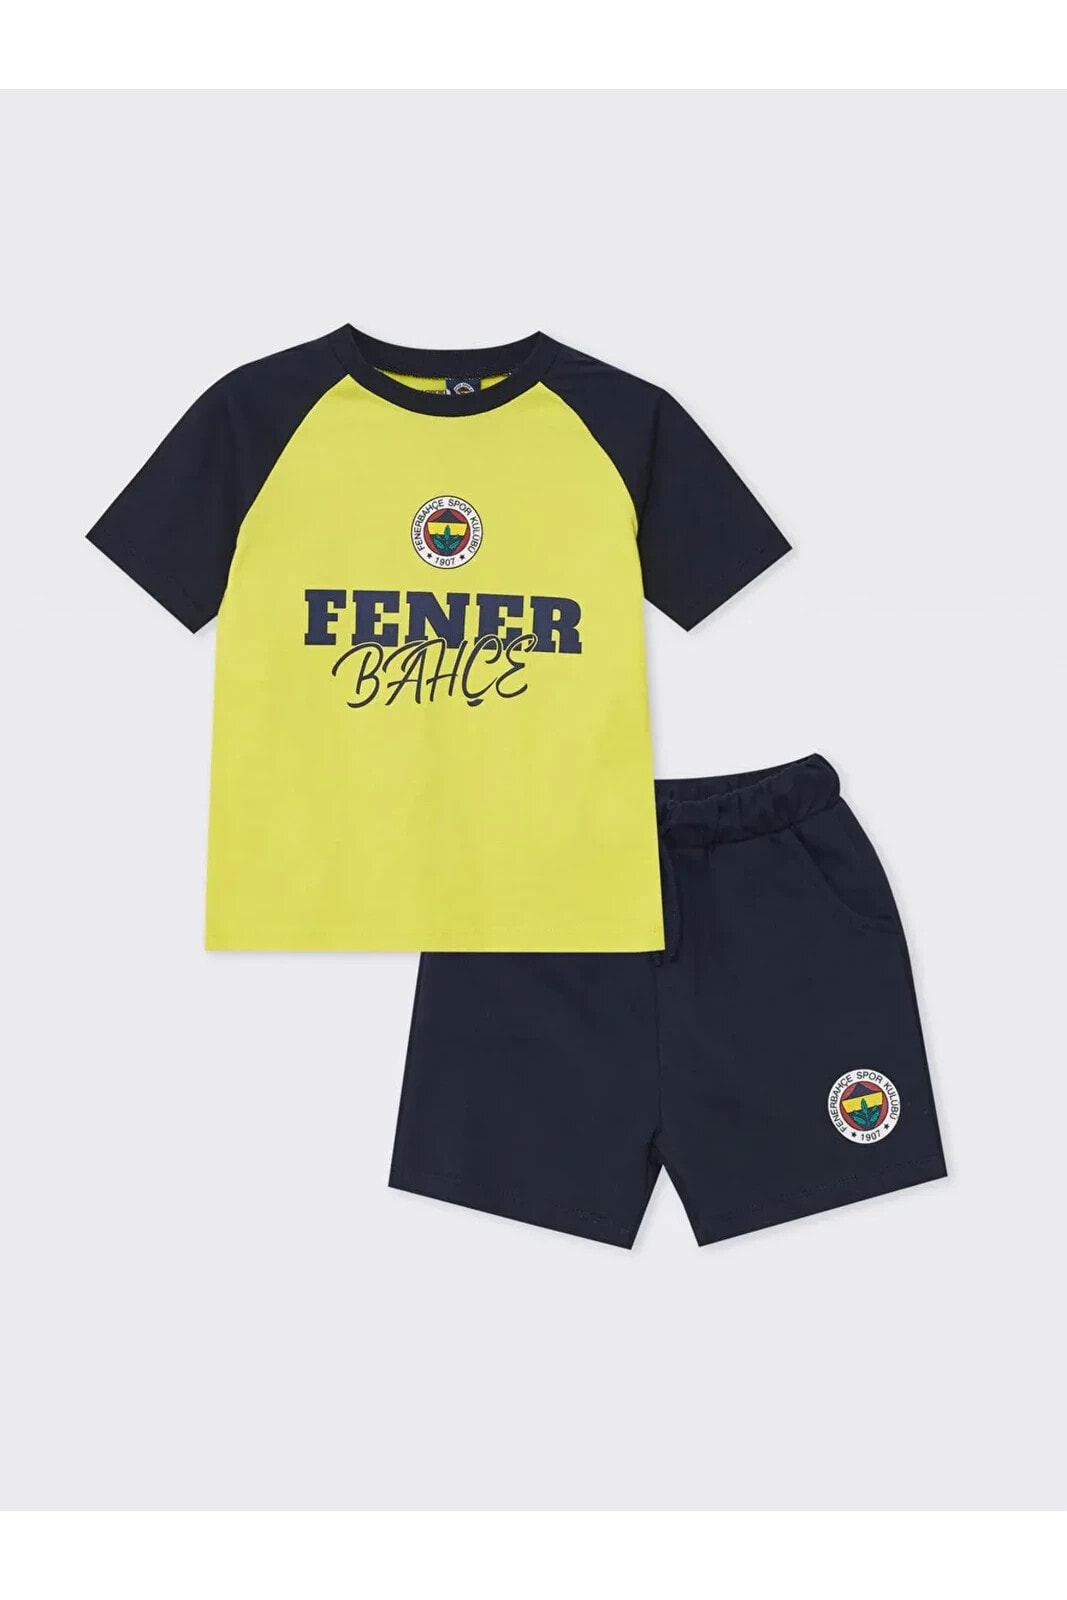 LCW baby Bisiklet Yaka Kısa Kollu Fenerbahçe Baskılı Erkek Bebek Tişört ve Şort 2'li Takım